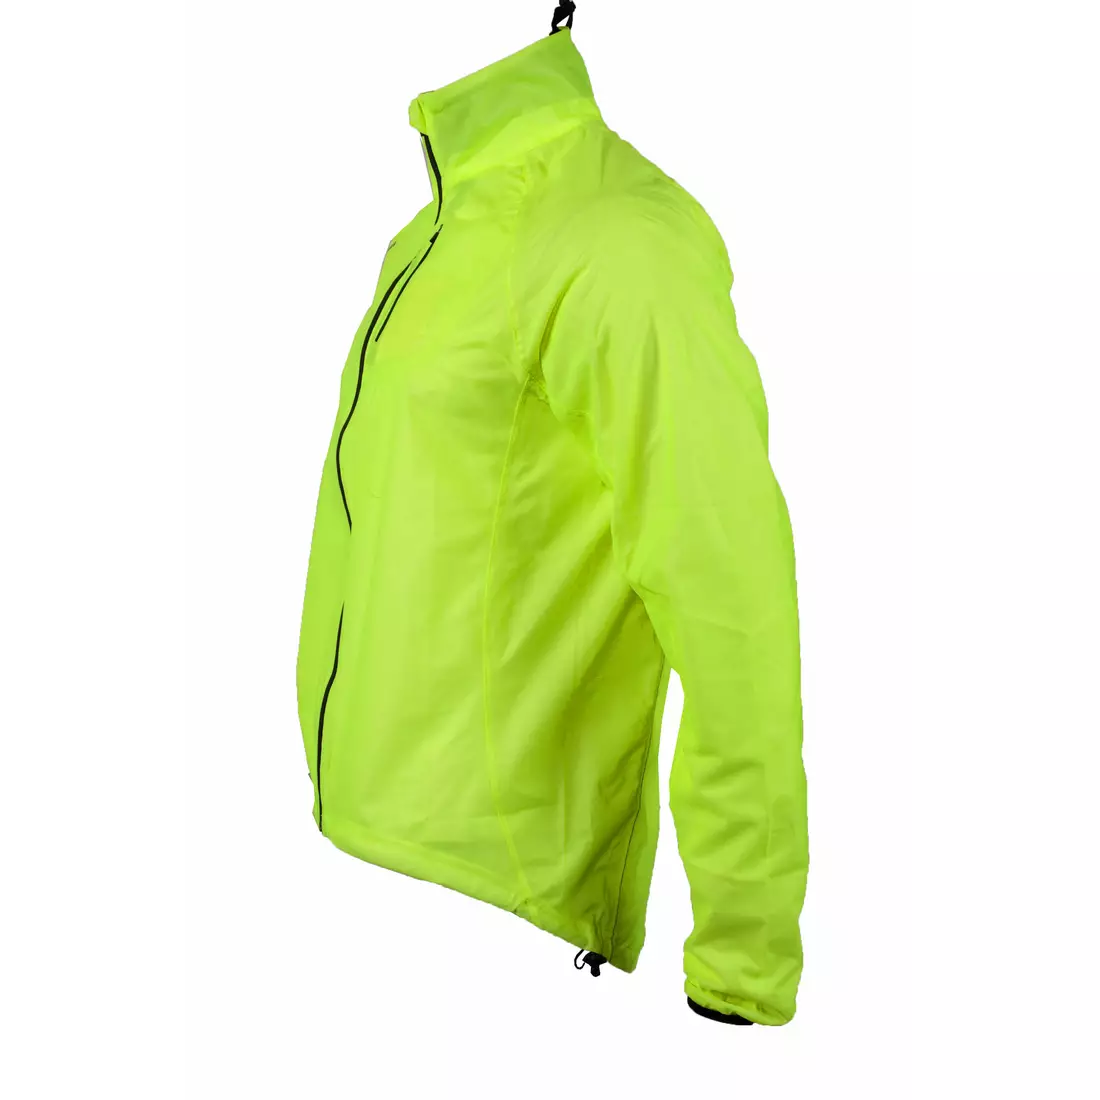 ROGELLI OHIO - nepromokavá cyklistická bunda, barva: Fluor